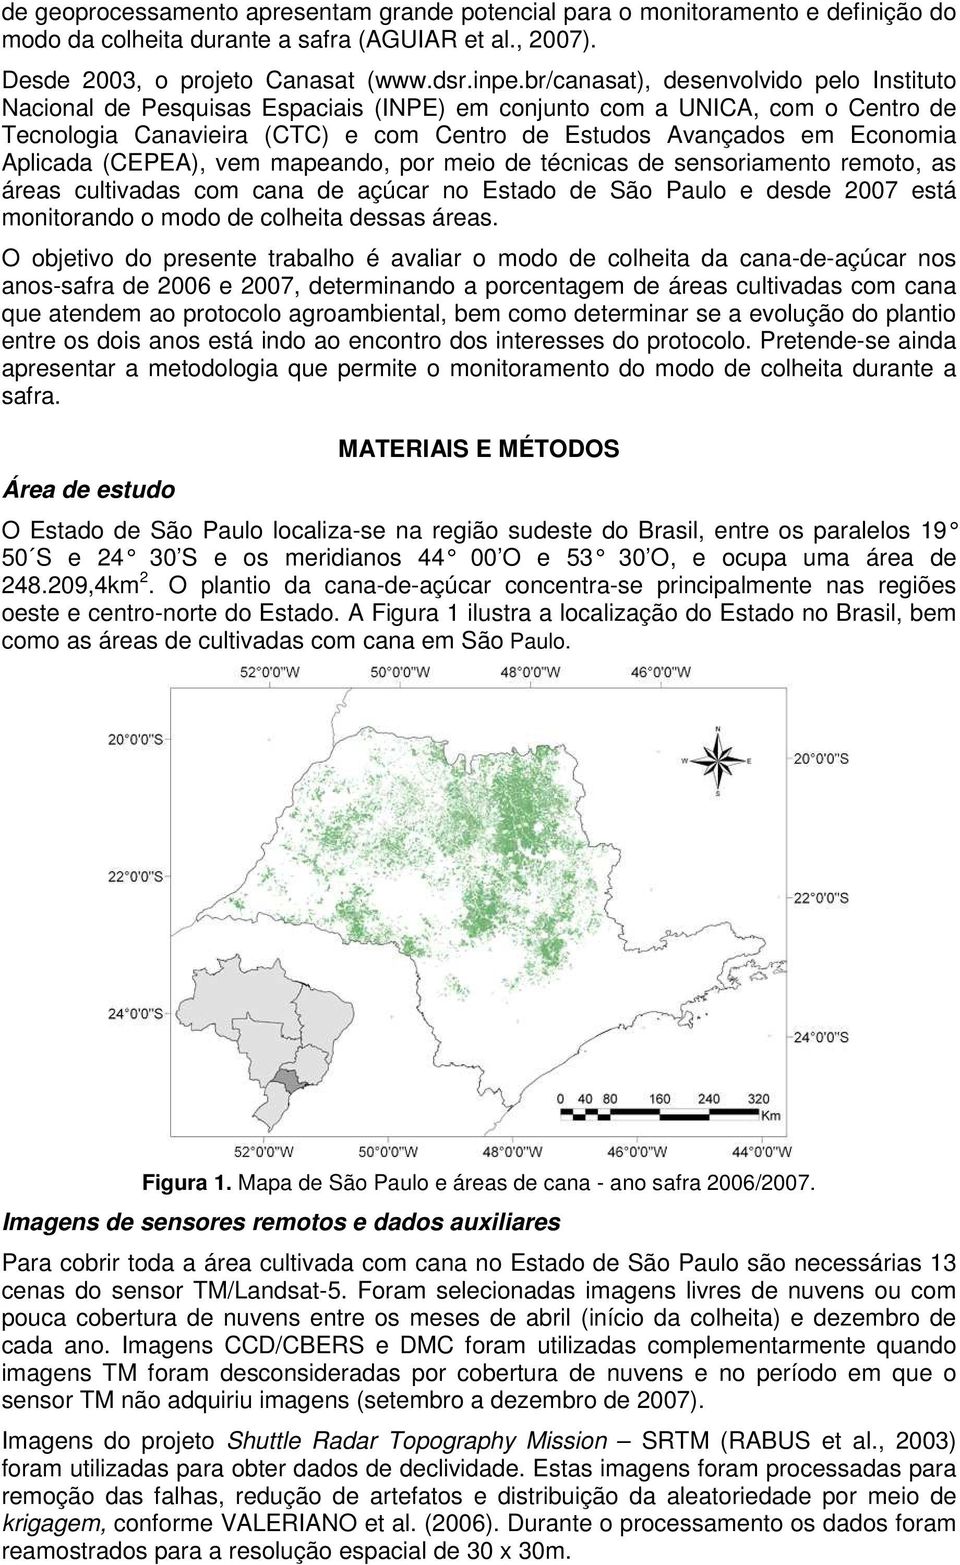 Aplicada (CEPEA), vem mapeando, por meio de técnicas de sensoriamento remoto, as áreas cultivadas com cana de açúcar no Estado de São Paulo e desde 2007 está monitorando o modo de colheita dessas